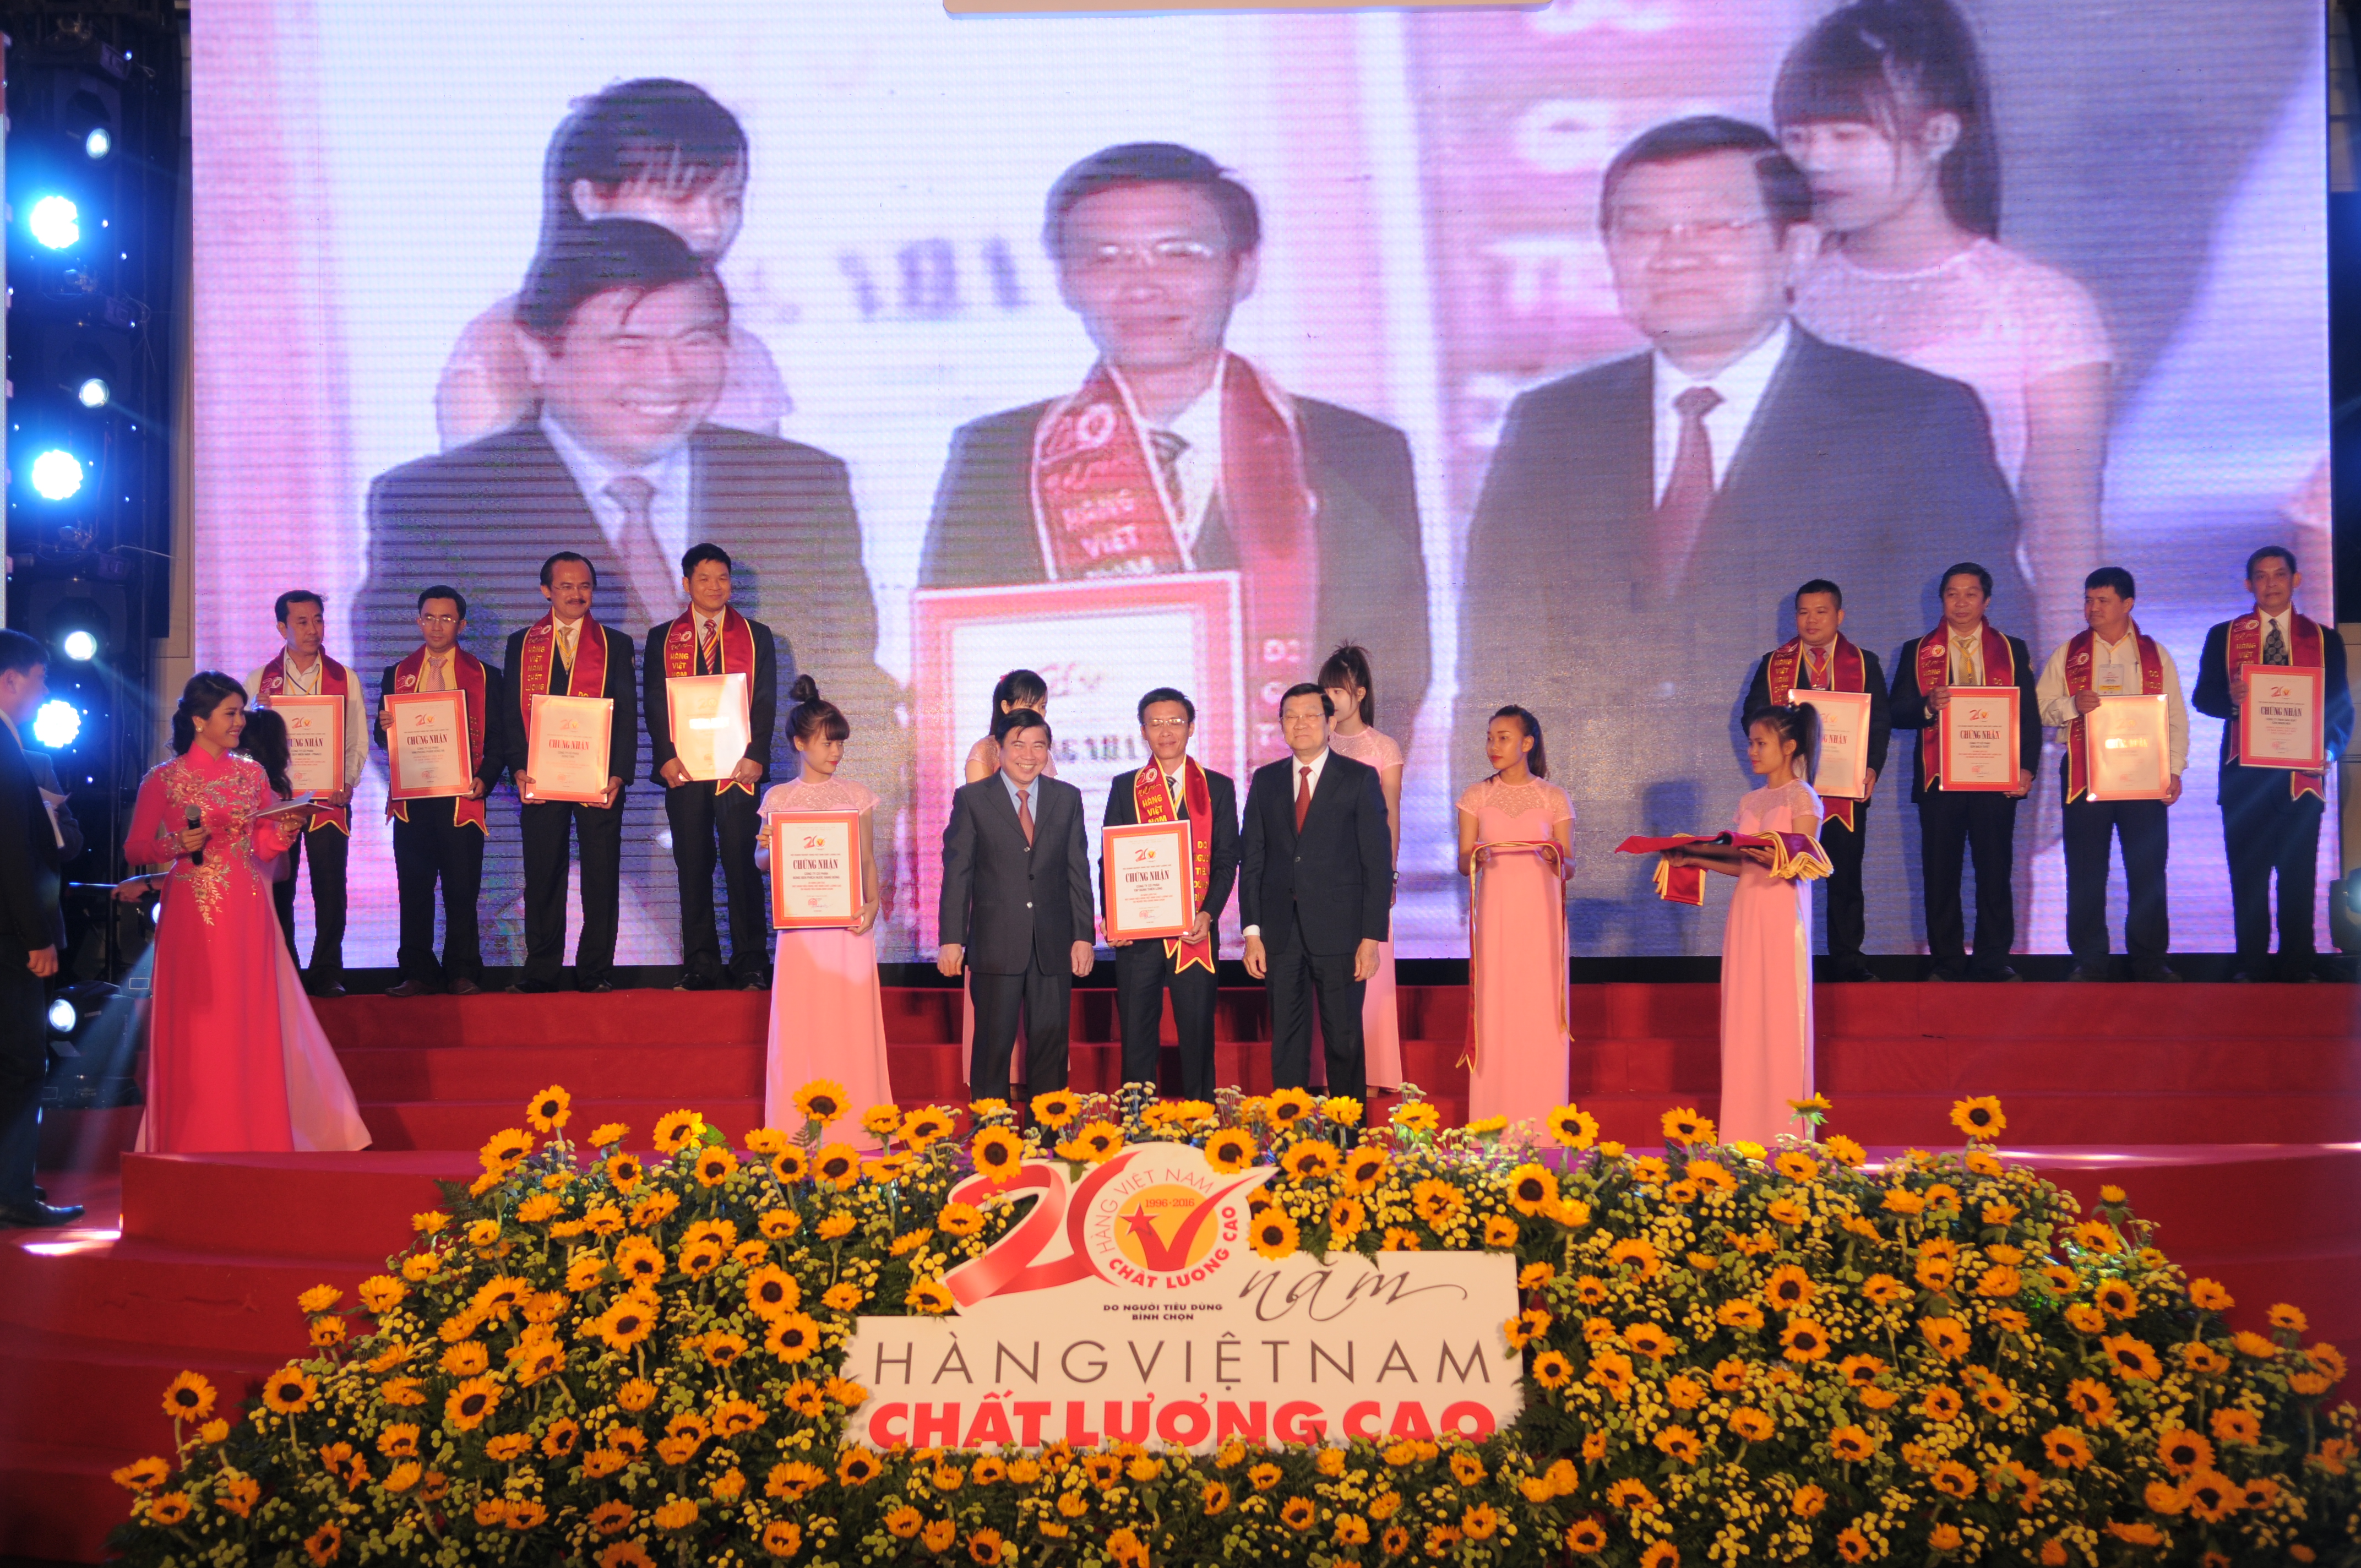 Đại diện Tập đoàn Thiên Long vinh dự nhận được bằng khen do Chủ tịch nước Trương Tấn Sang cùng Chủ tịch UBND TP. HCM Nguyễn Thành Phong trao tặng.